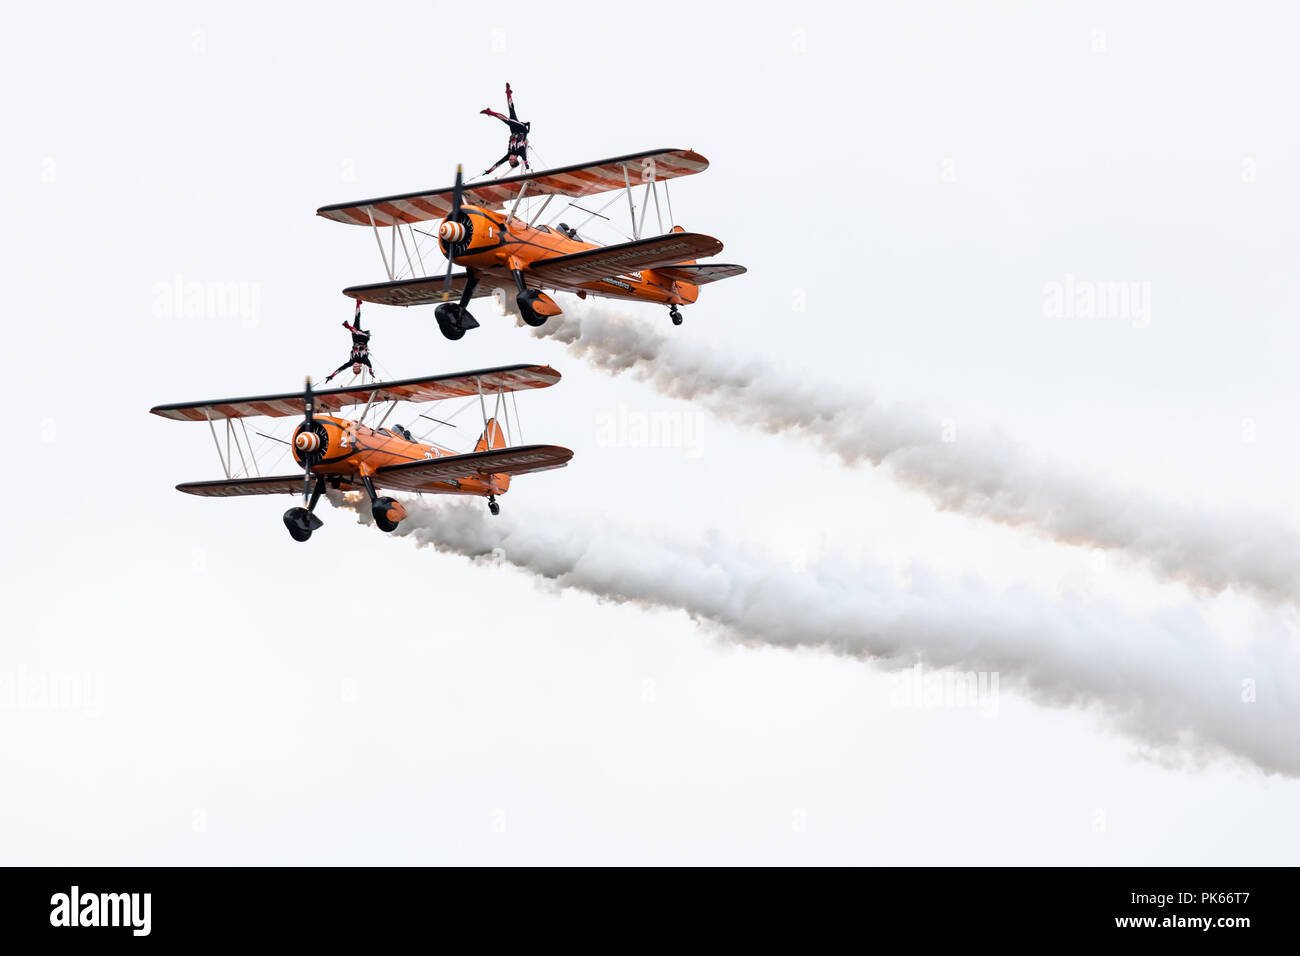 Wingwalkers invertito in stretta per i voli in formazione sul loro AeroSuperBatics Stearman biplani Foto Stock